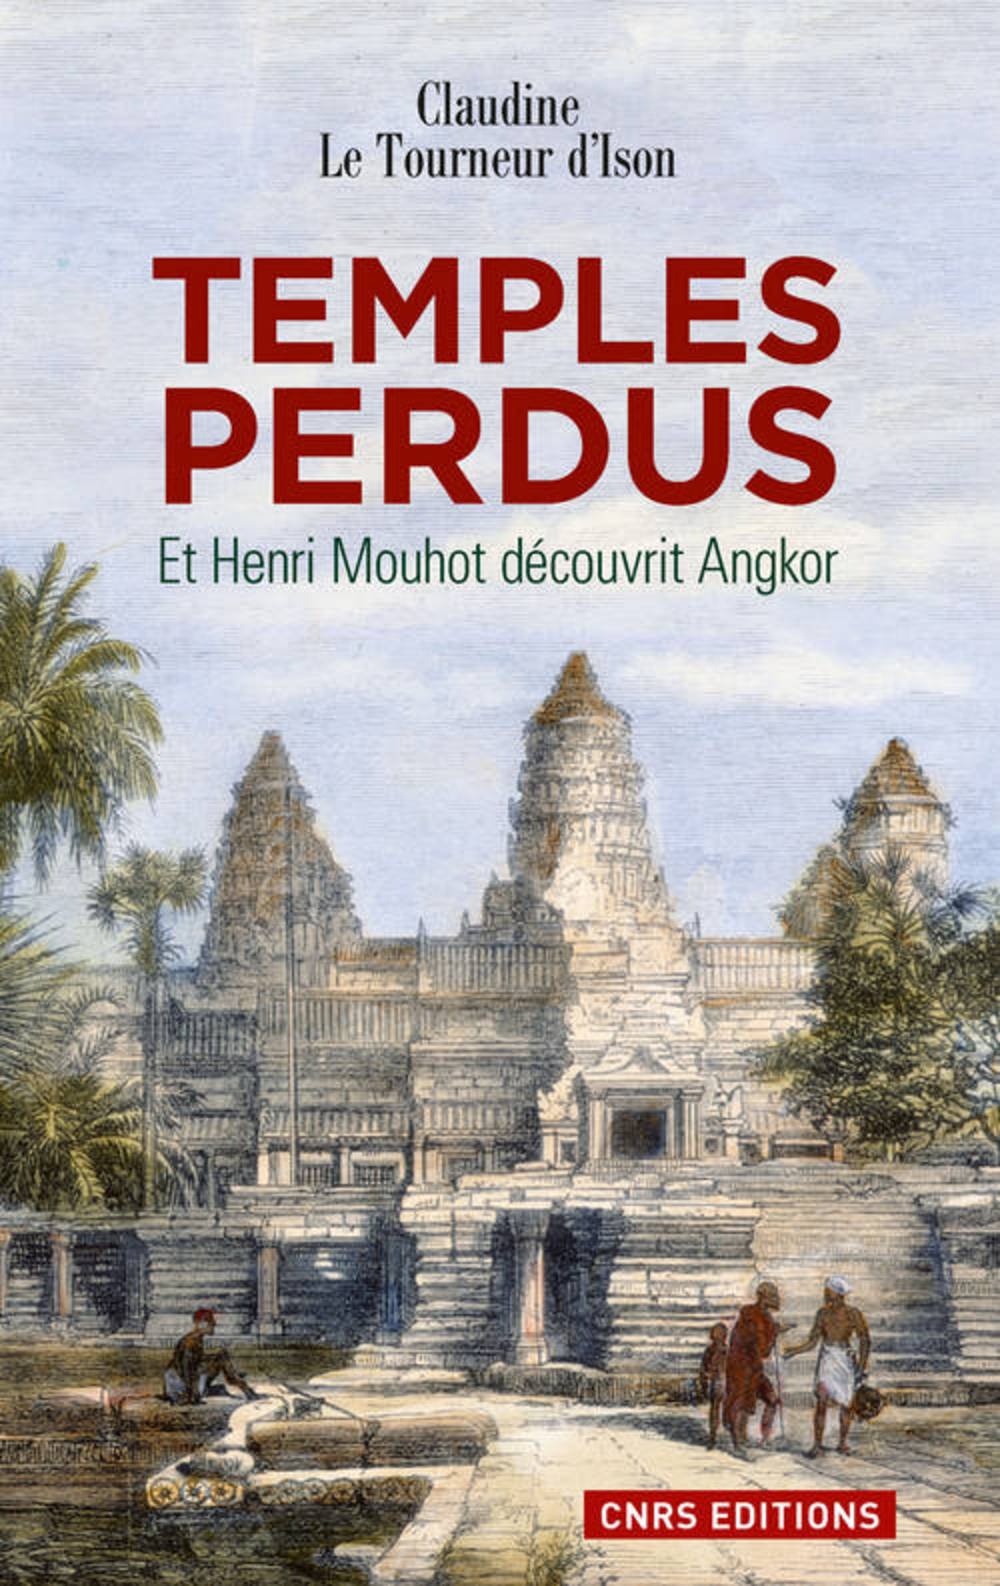 Temples perdus. Et Henri Mouhot découvrit Angkor, 2013, 250 p. Poche